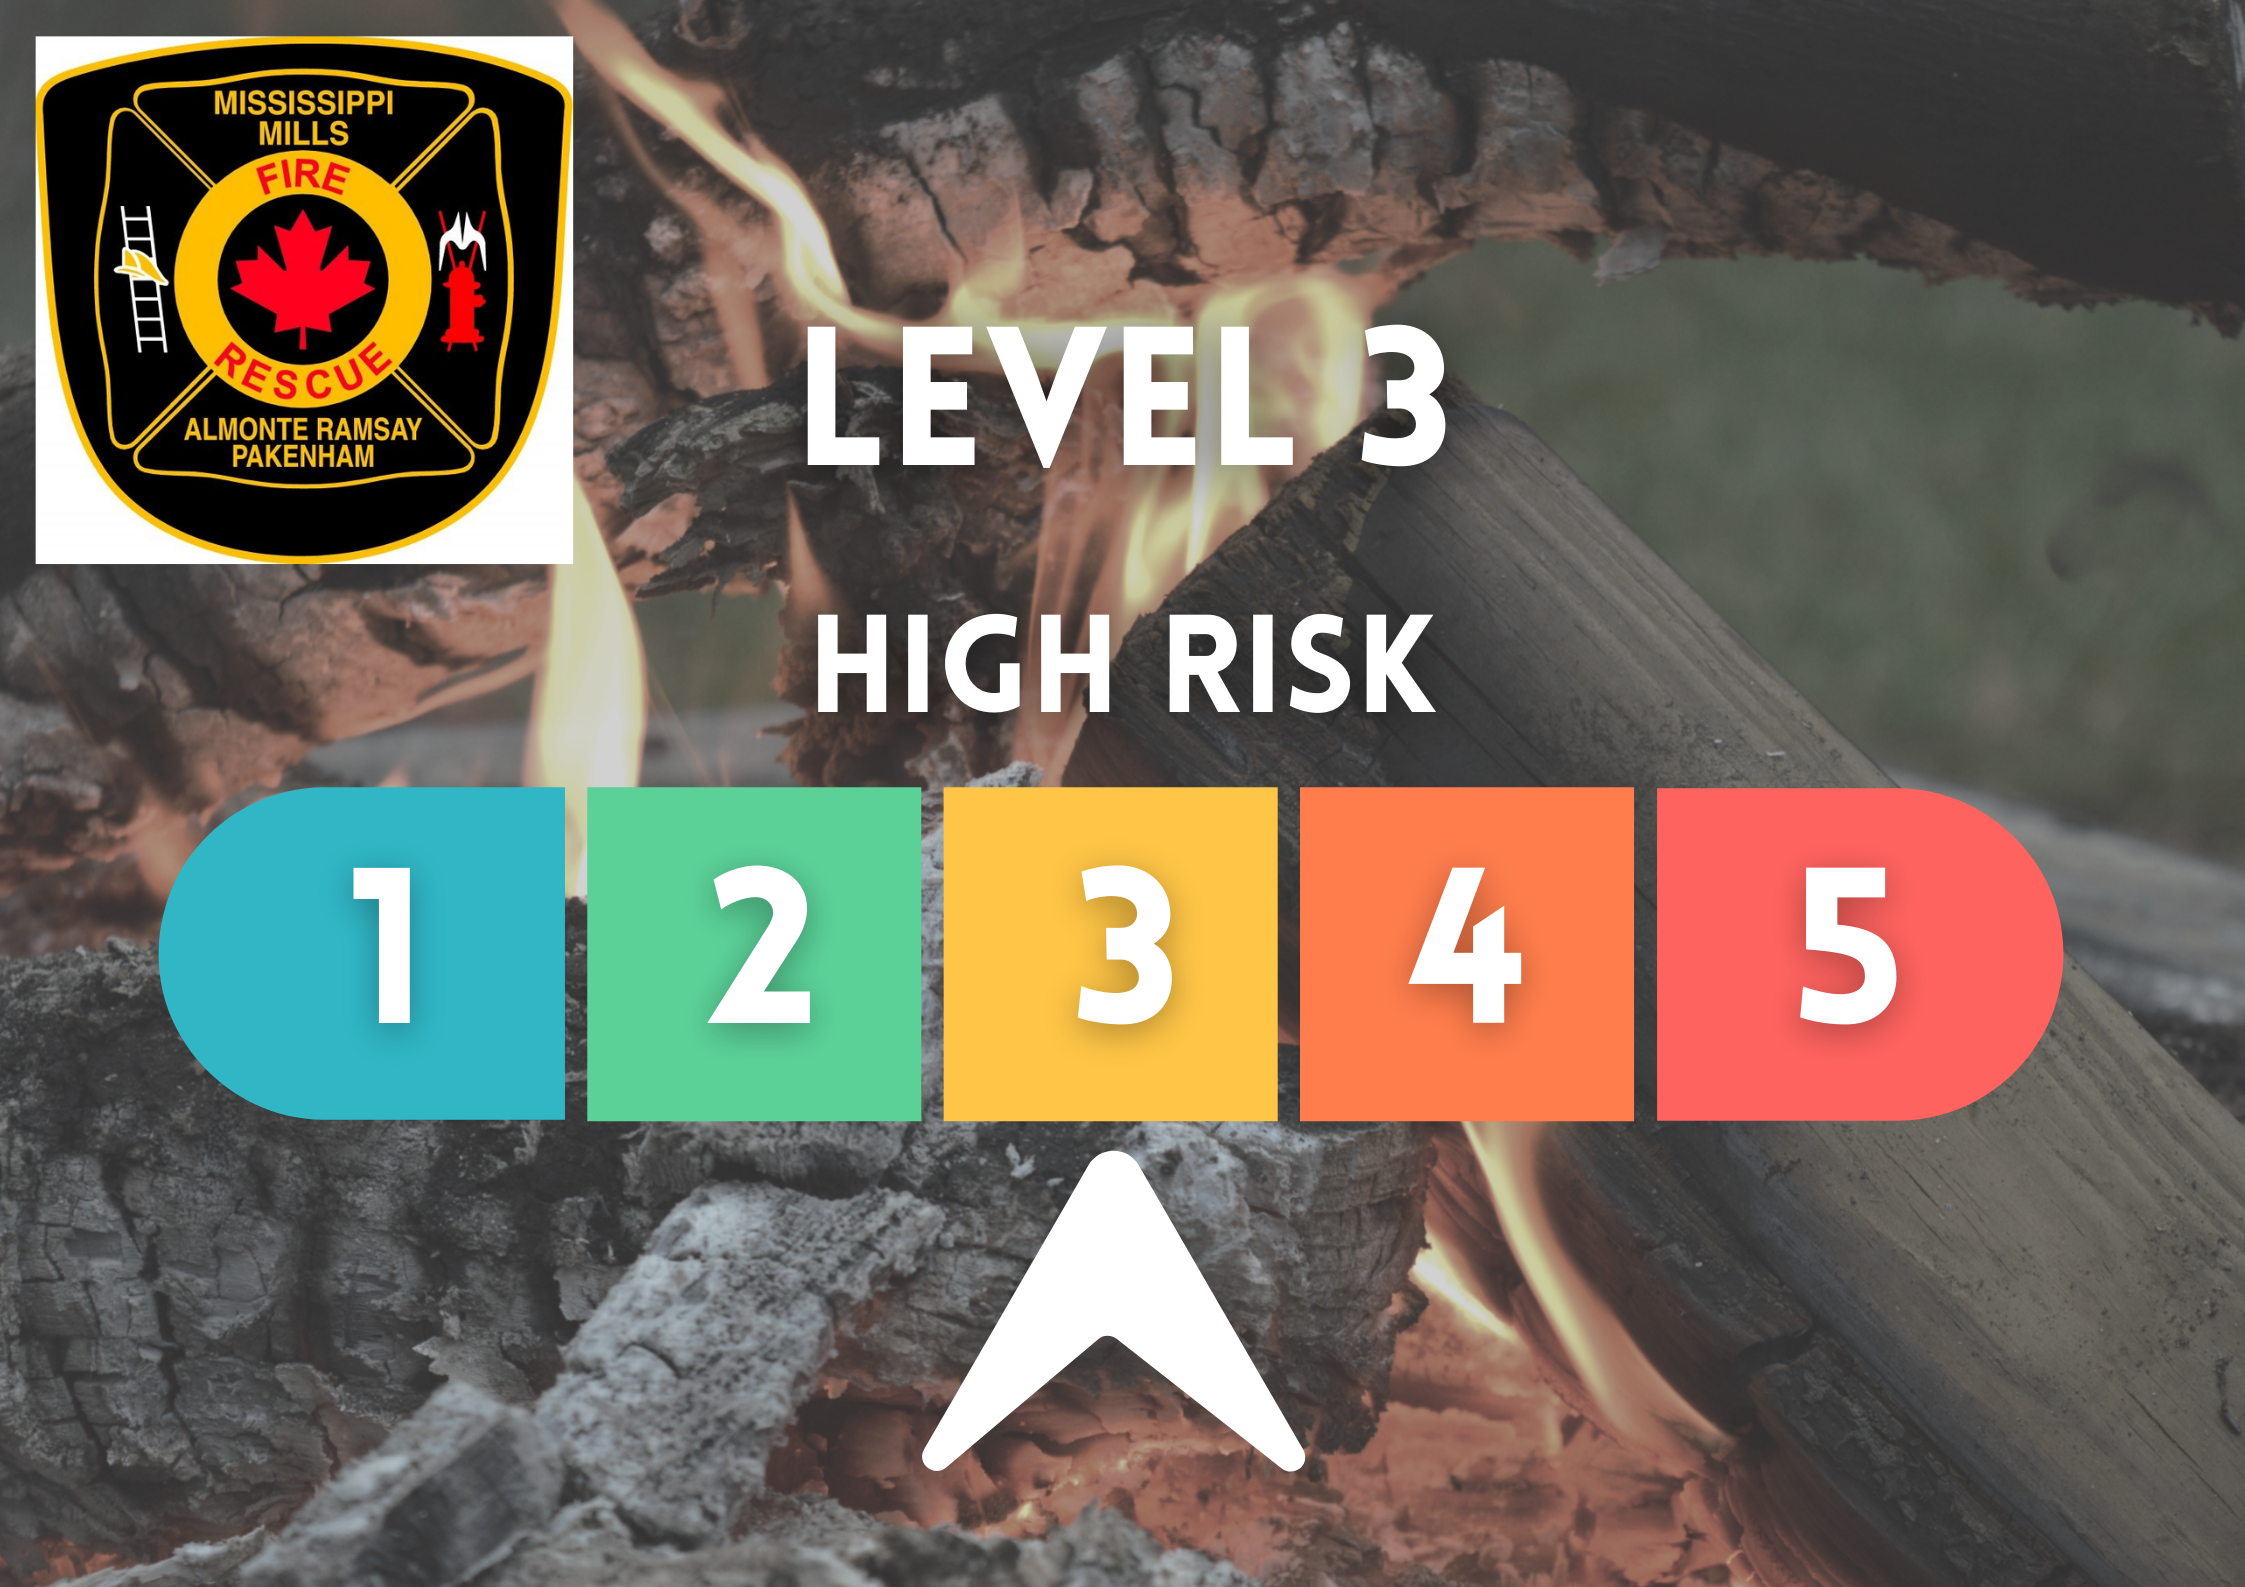 Burn Risk Level 3 - High Risk